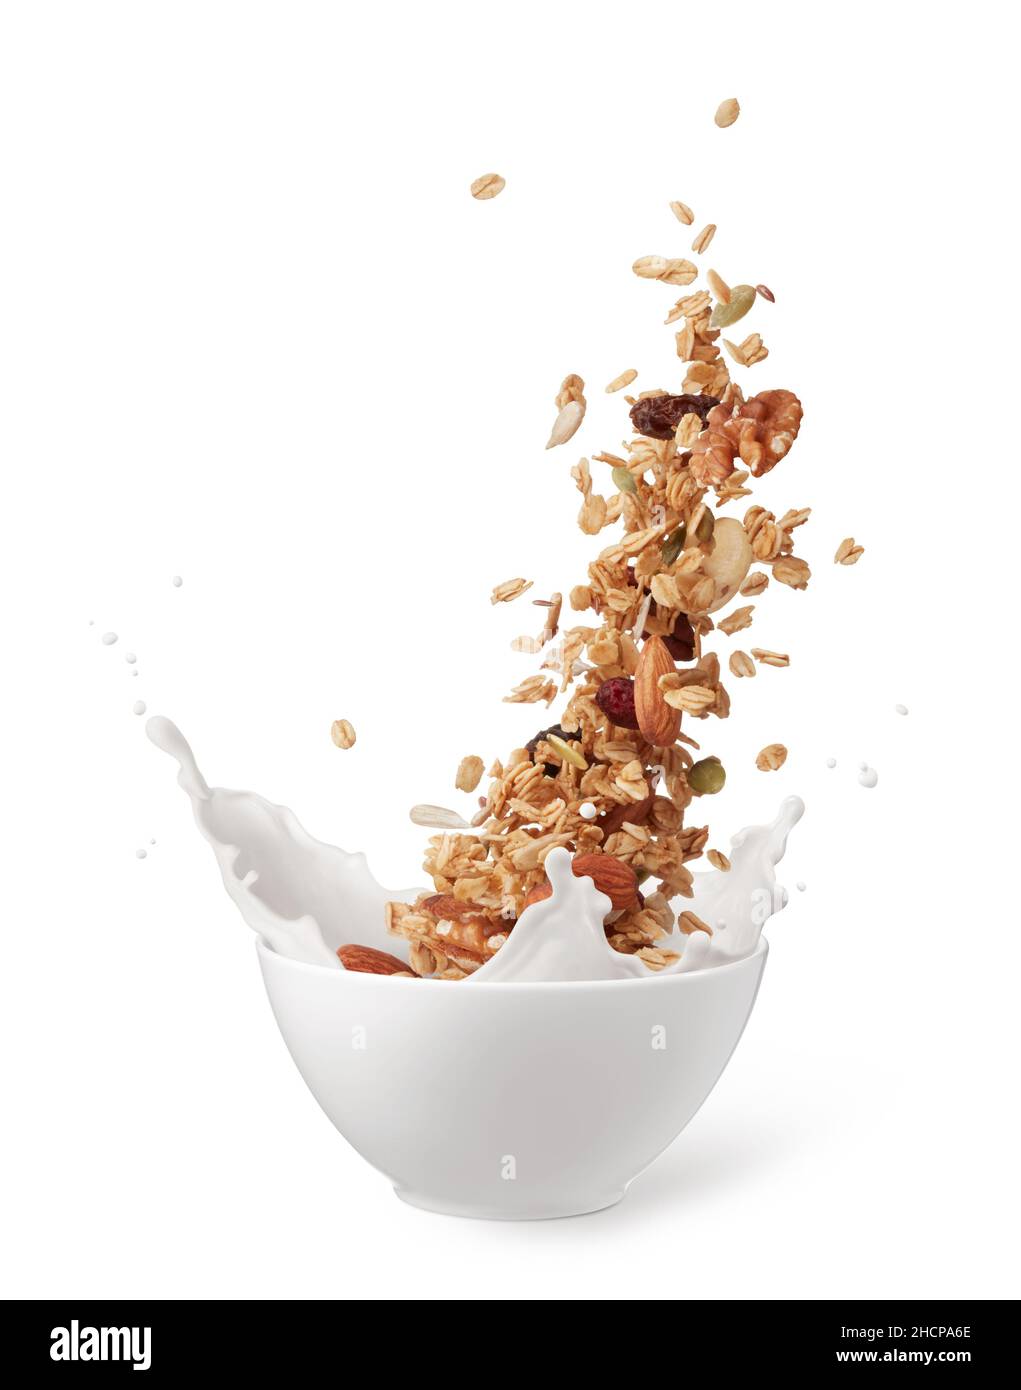 bowl of granola with milk splashing isolated on white Stock Photo